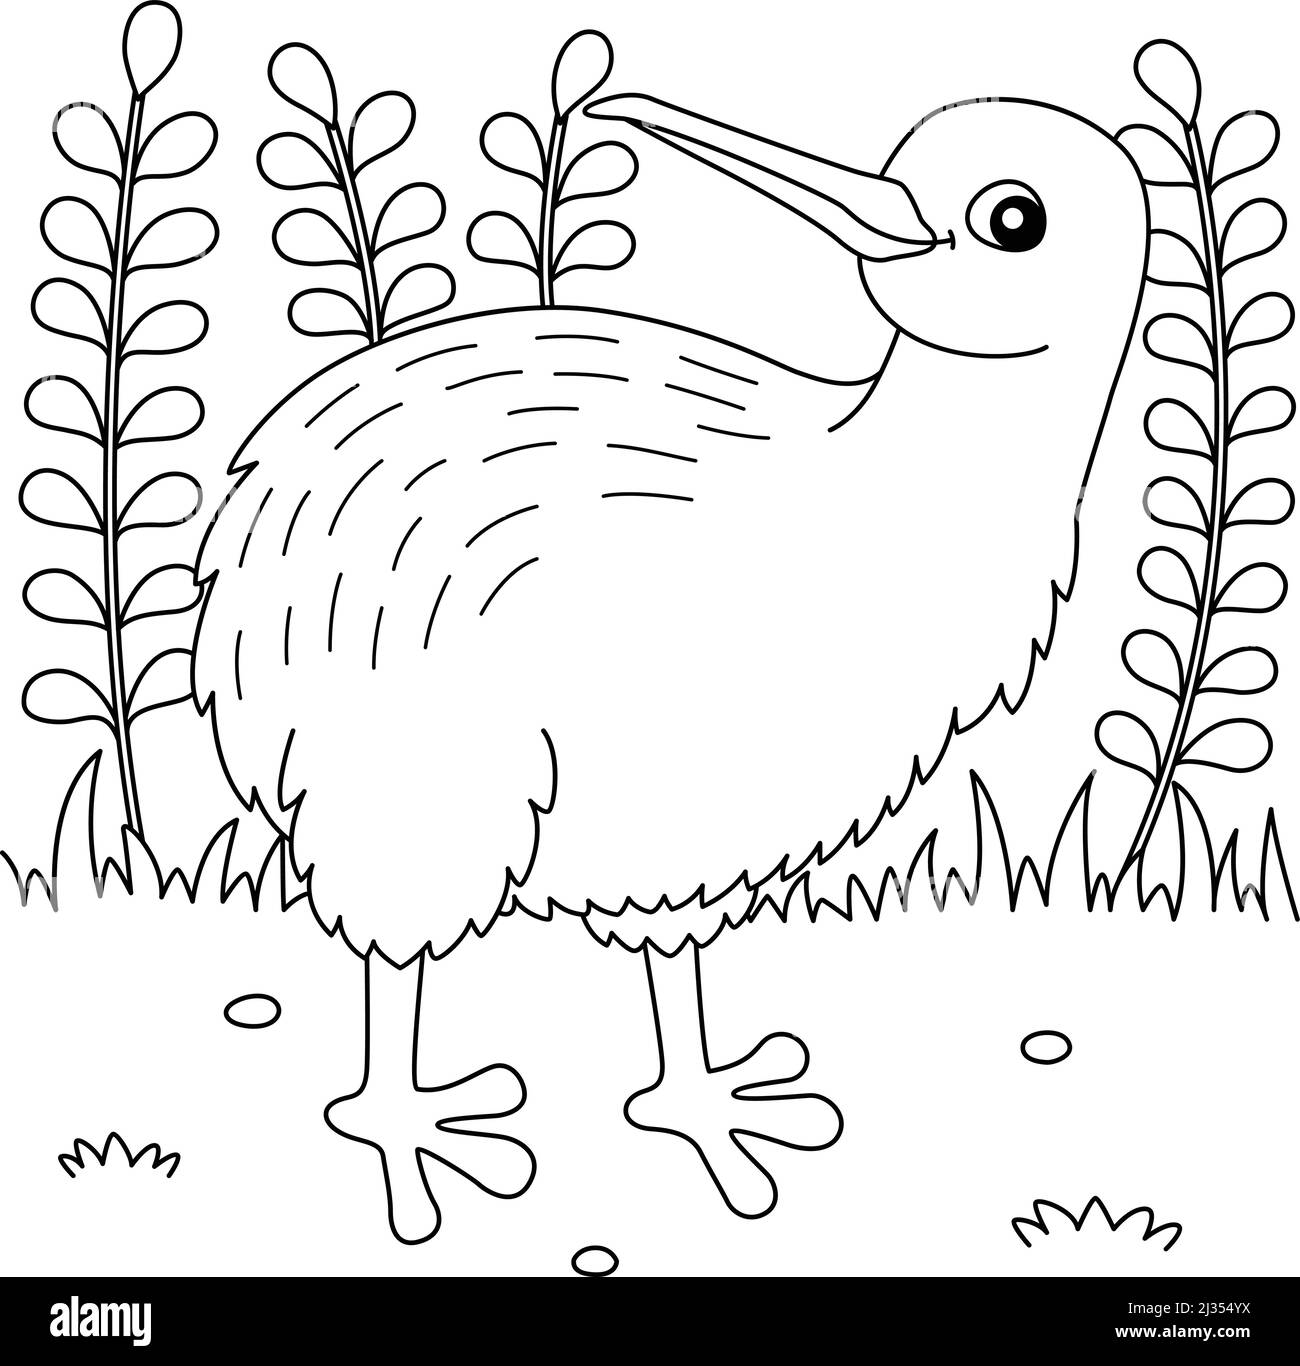 Kiwi animal Imágenes de stock en blanco y negro - Alamy